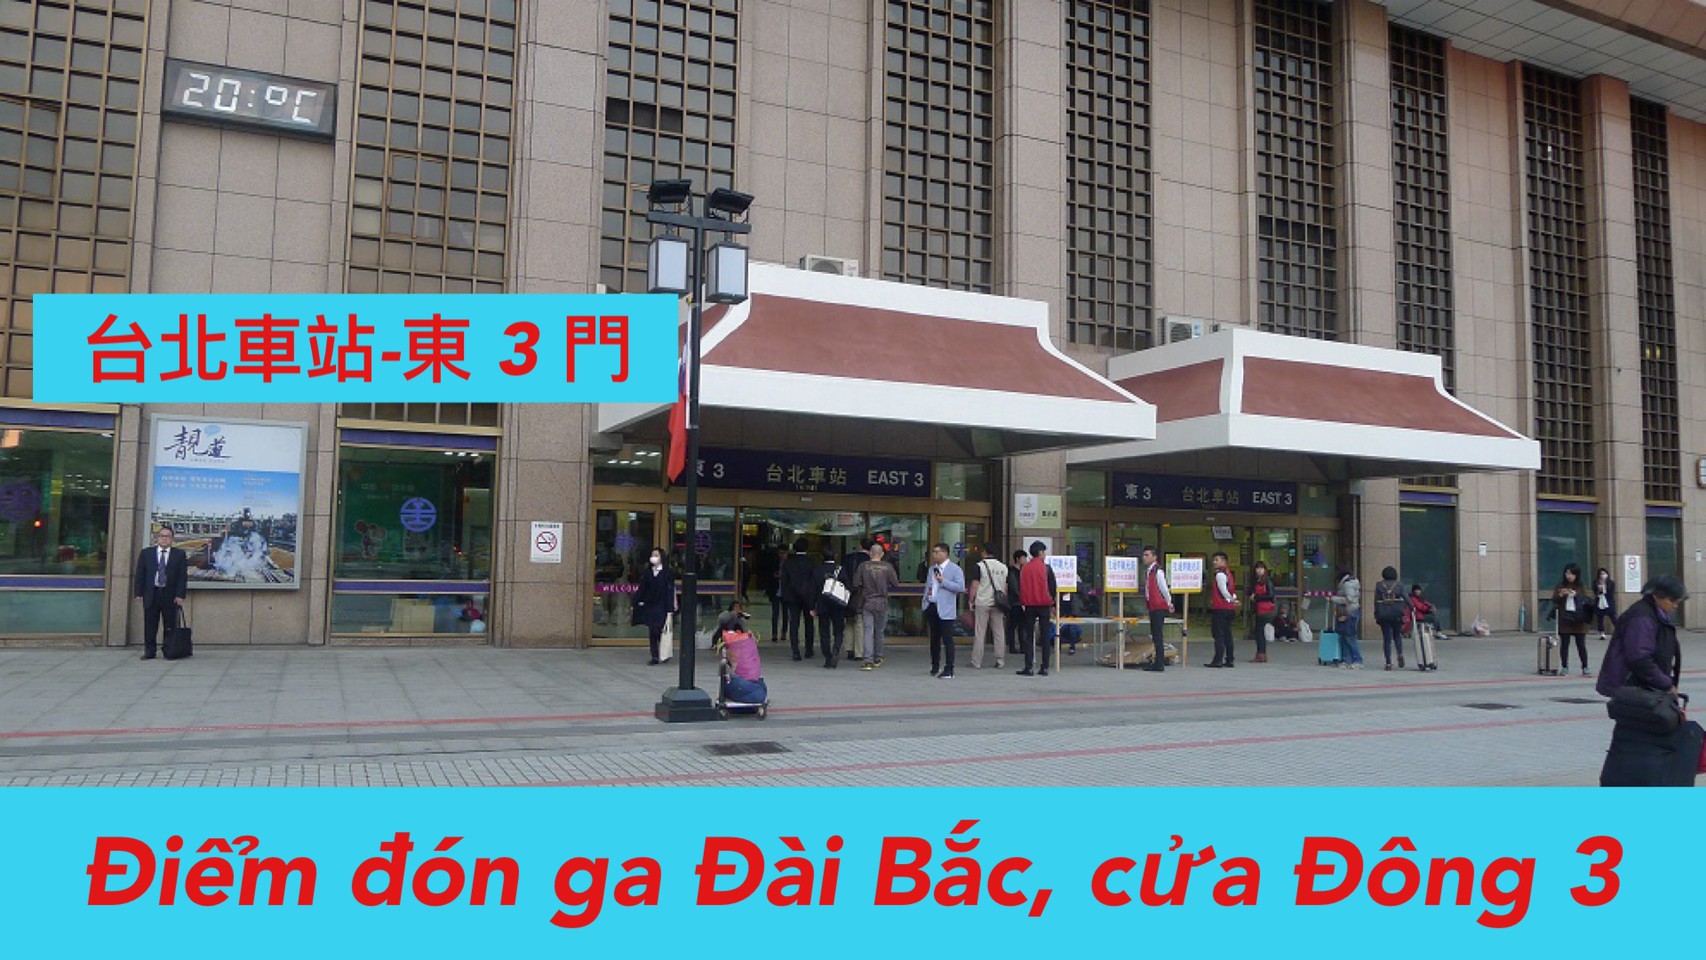  07:00 Đón ga Đài Bắc (East 3) /台北車站 